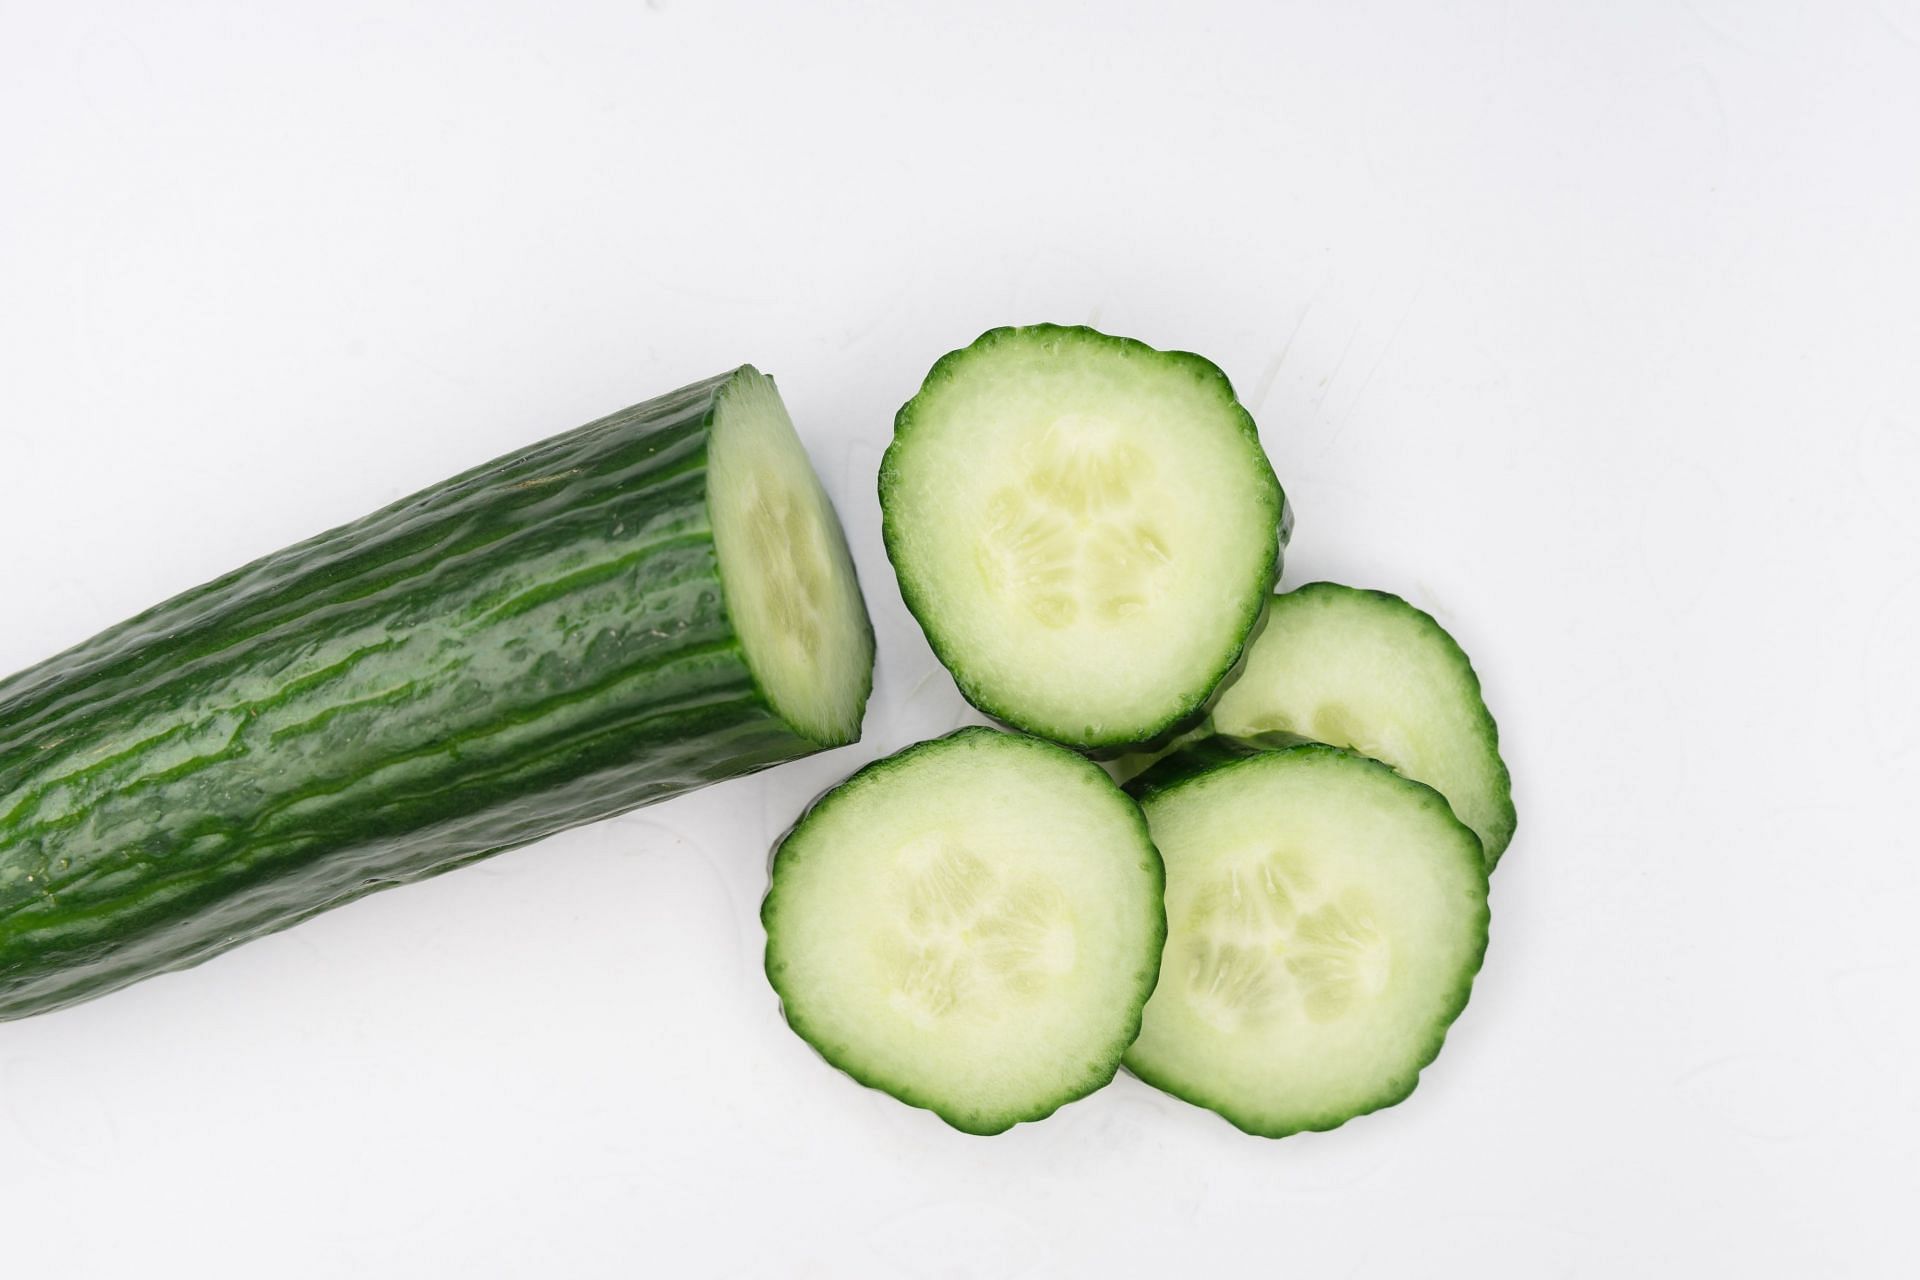 Pickled cucumbers are tasty and popular (Image via Unsplash/Markus Winkler)